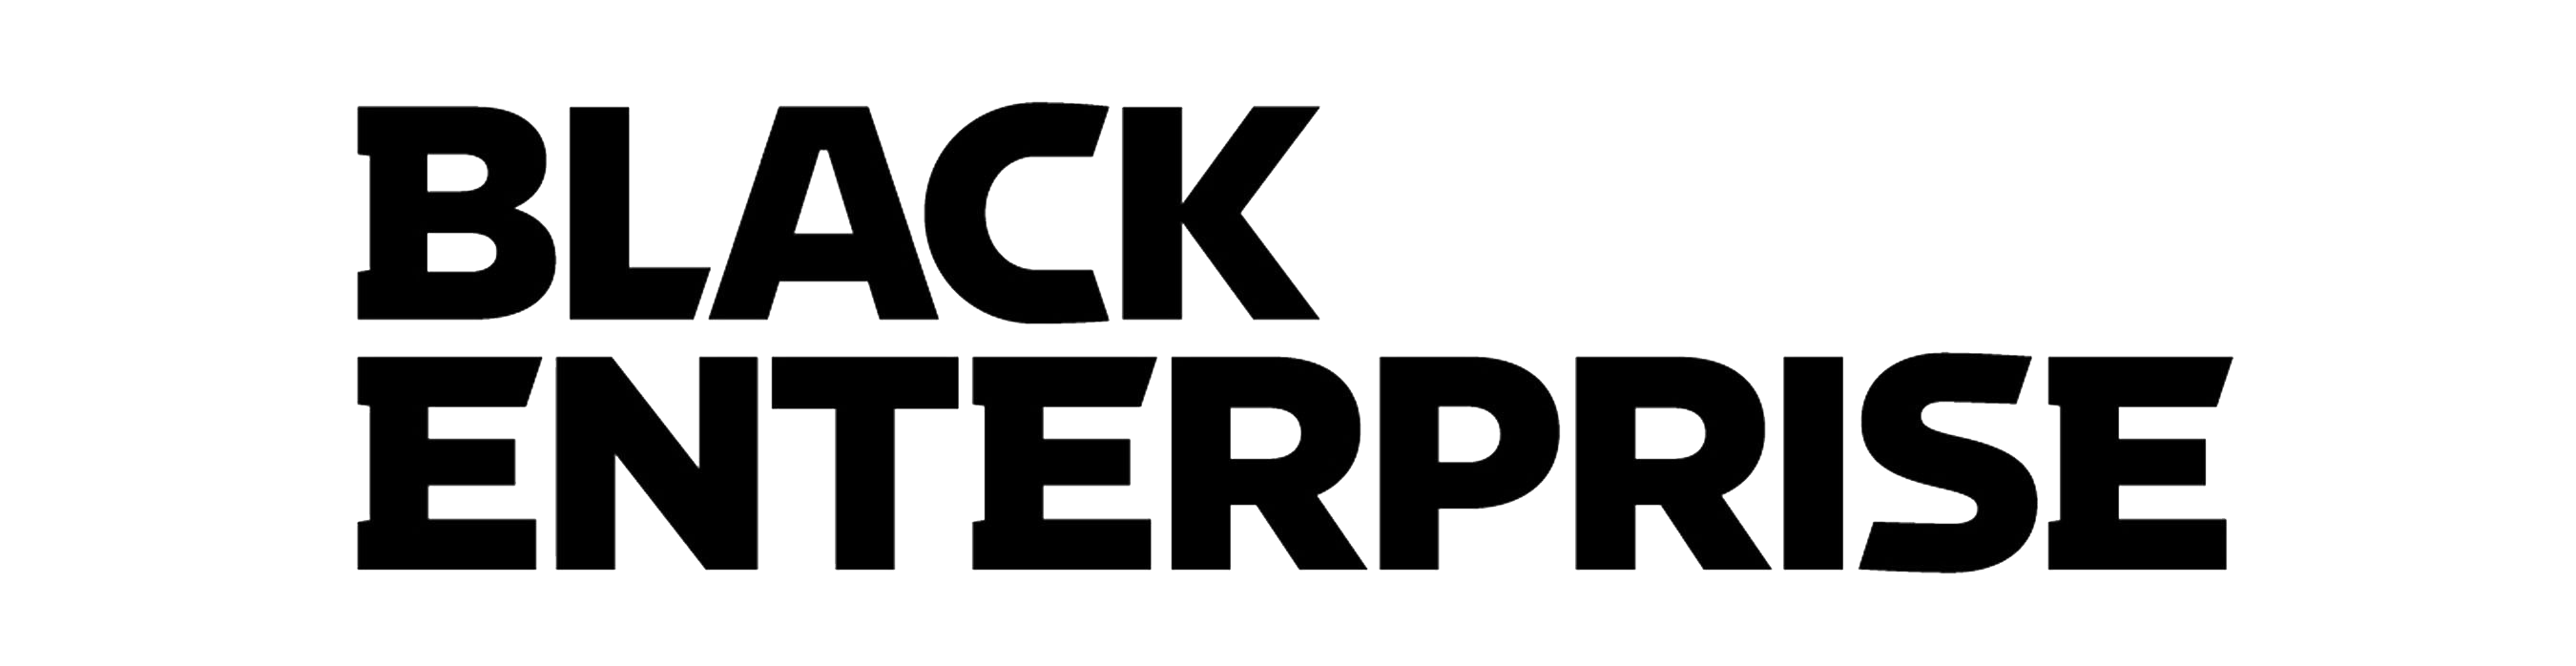 black enterprise logo